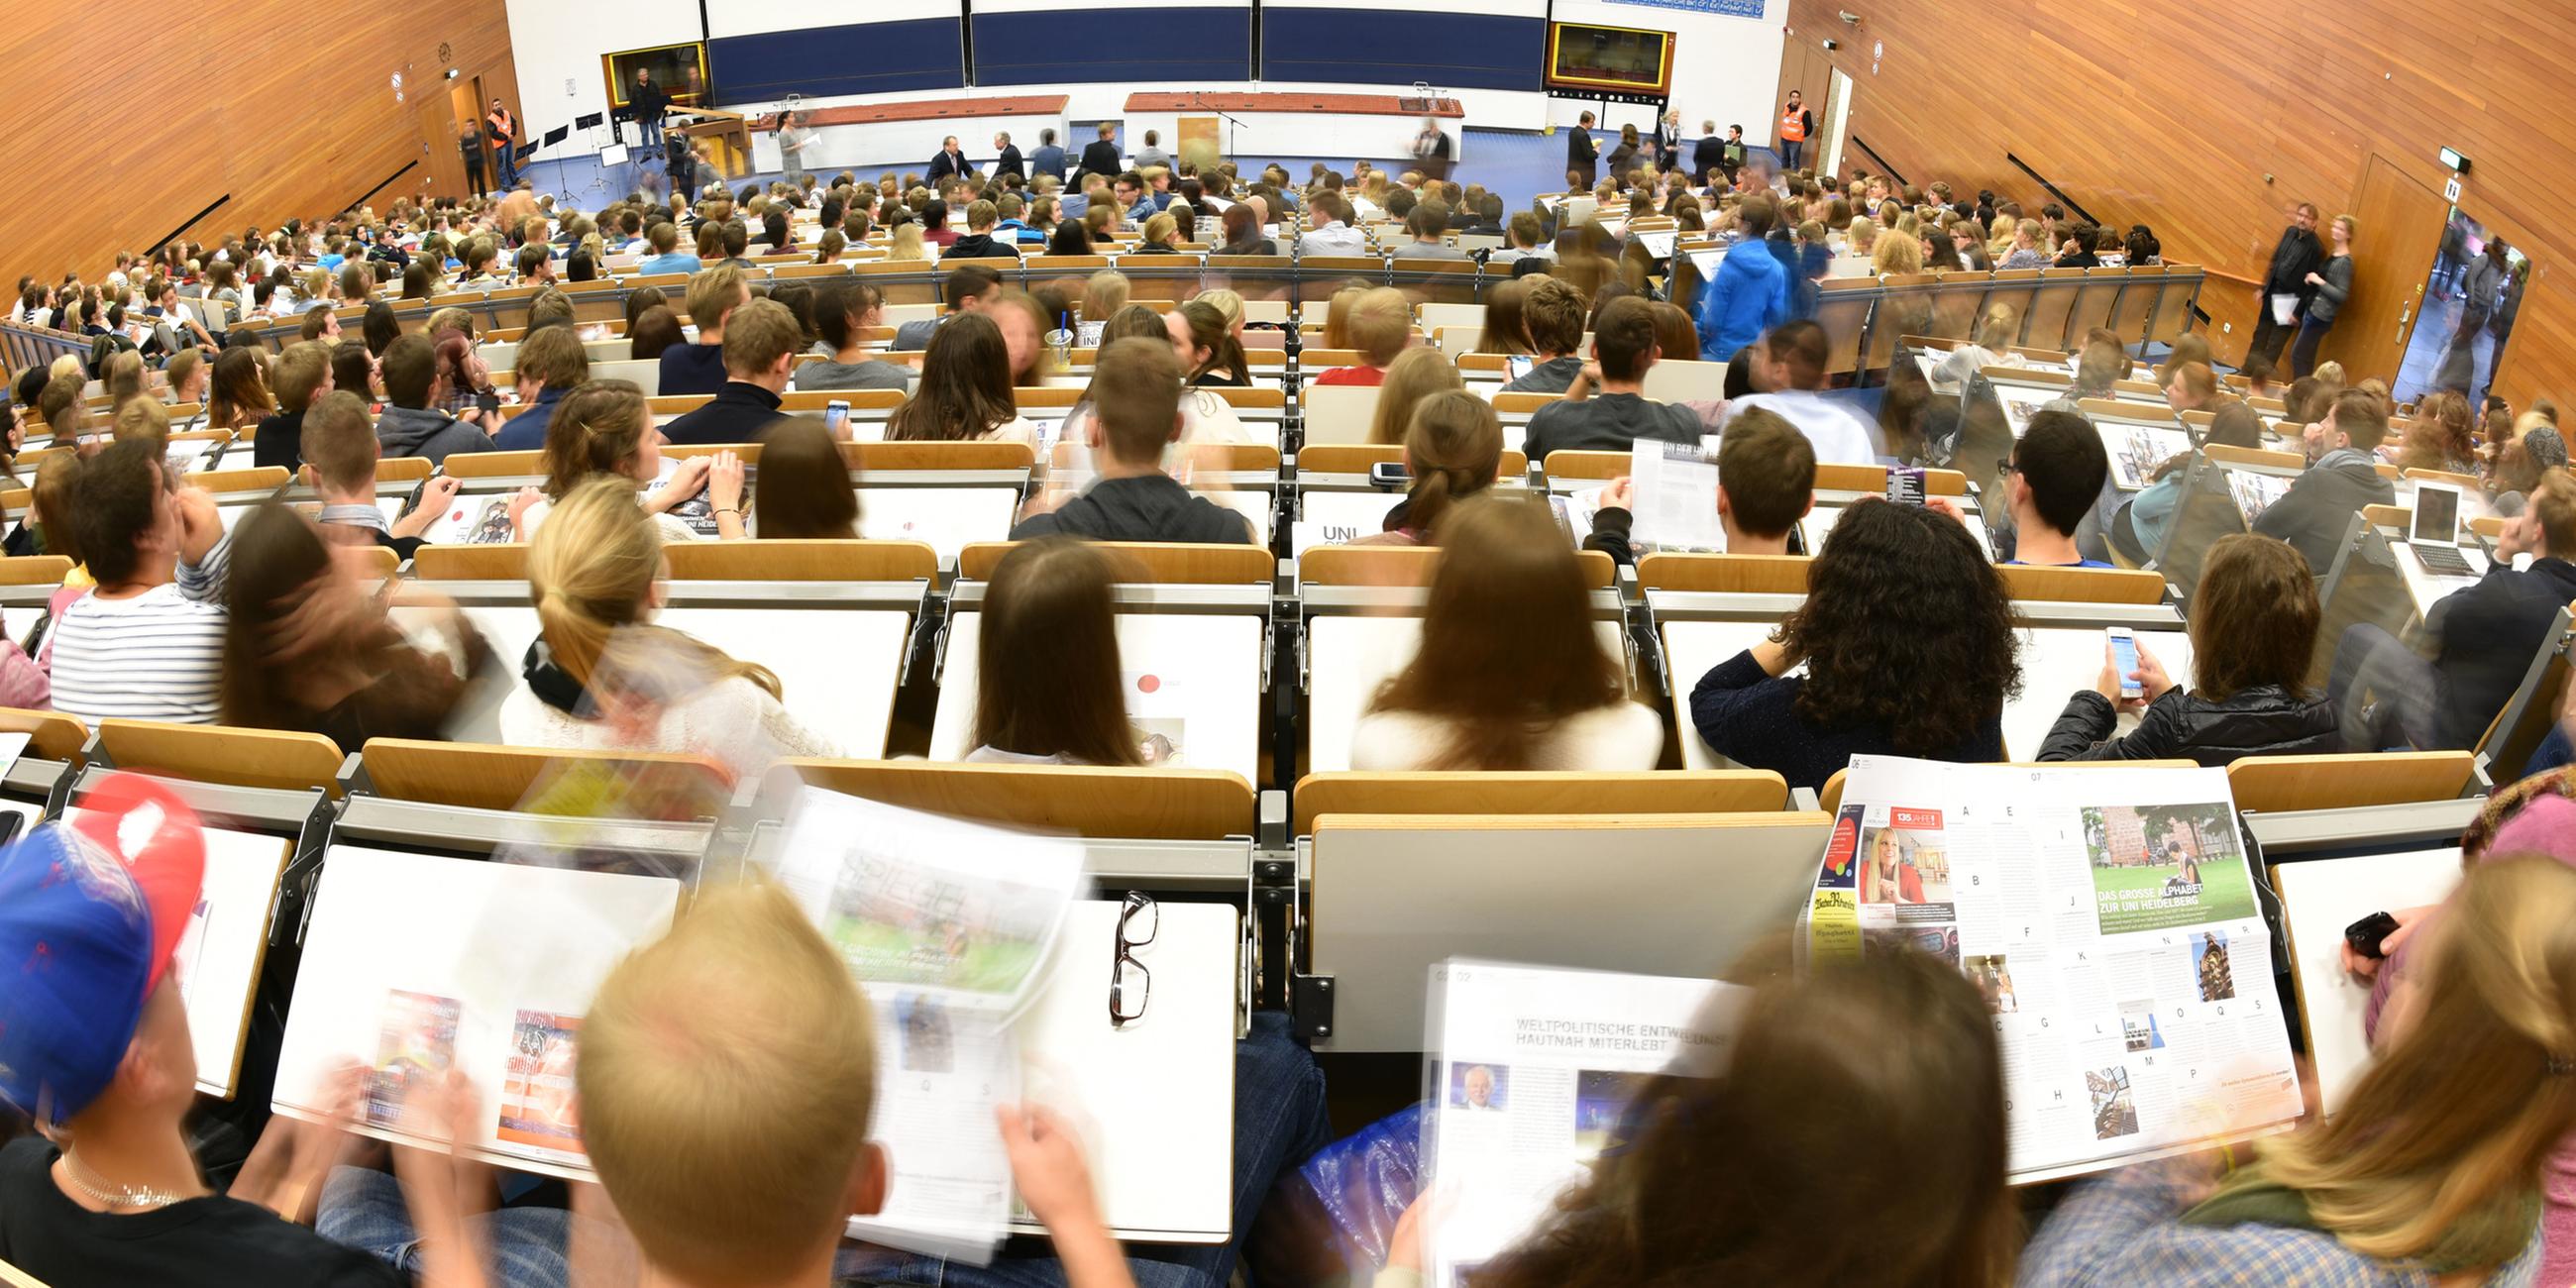 Archiv: Studenten nehmen am 13.10.2014 in Heidelberg in einem Hörsaal der Universität an einer Erstsemester-Veranstaltung teil.